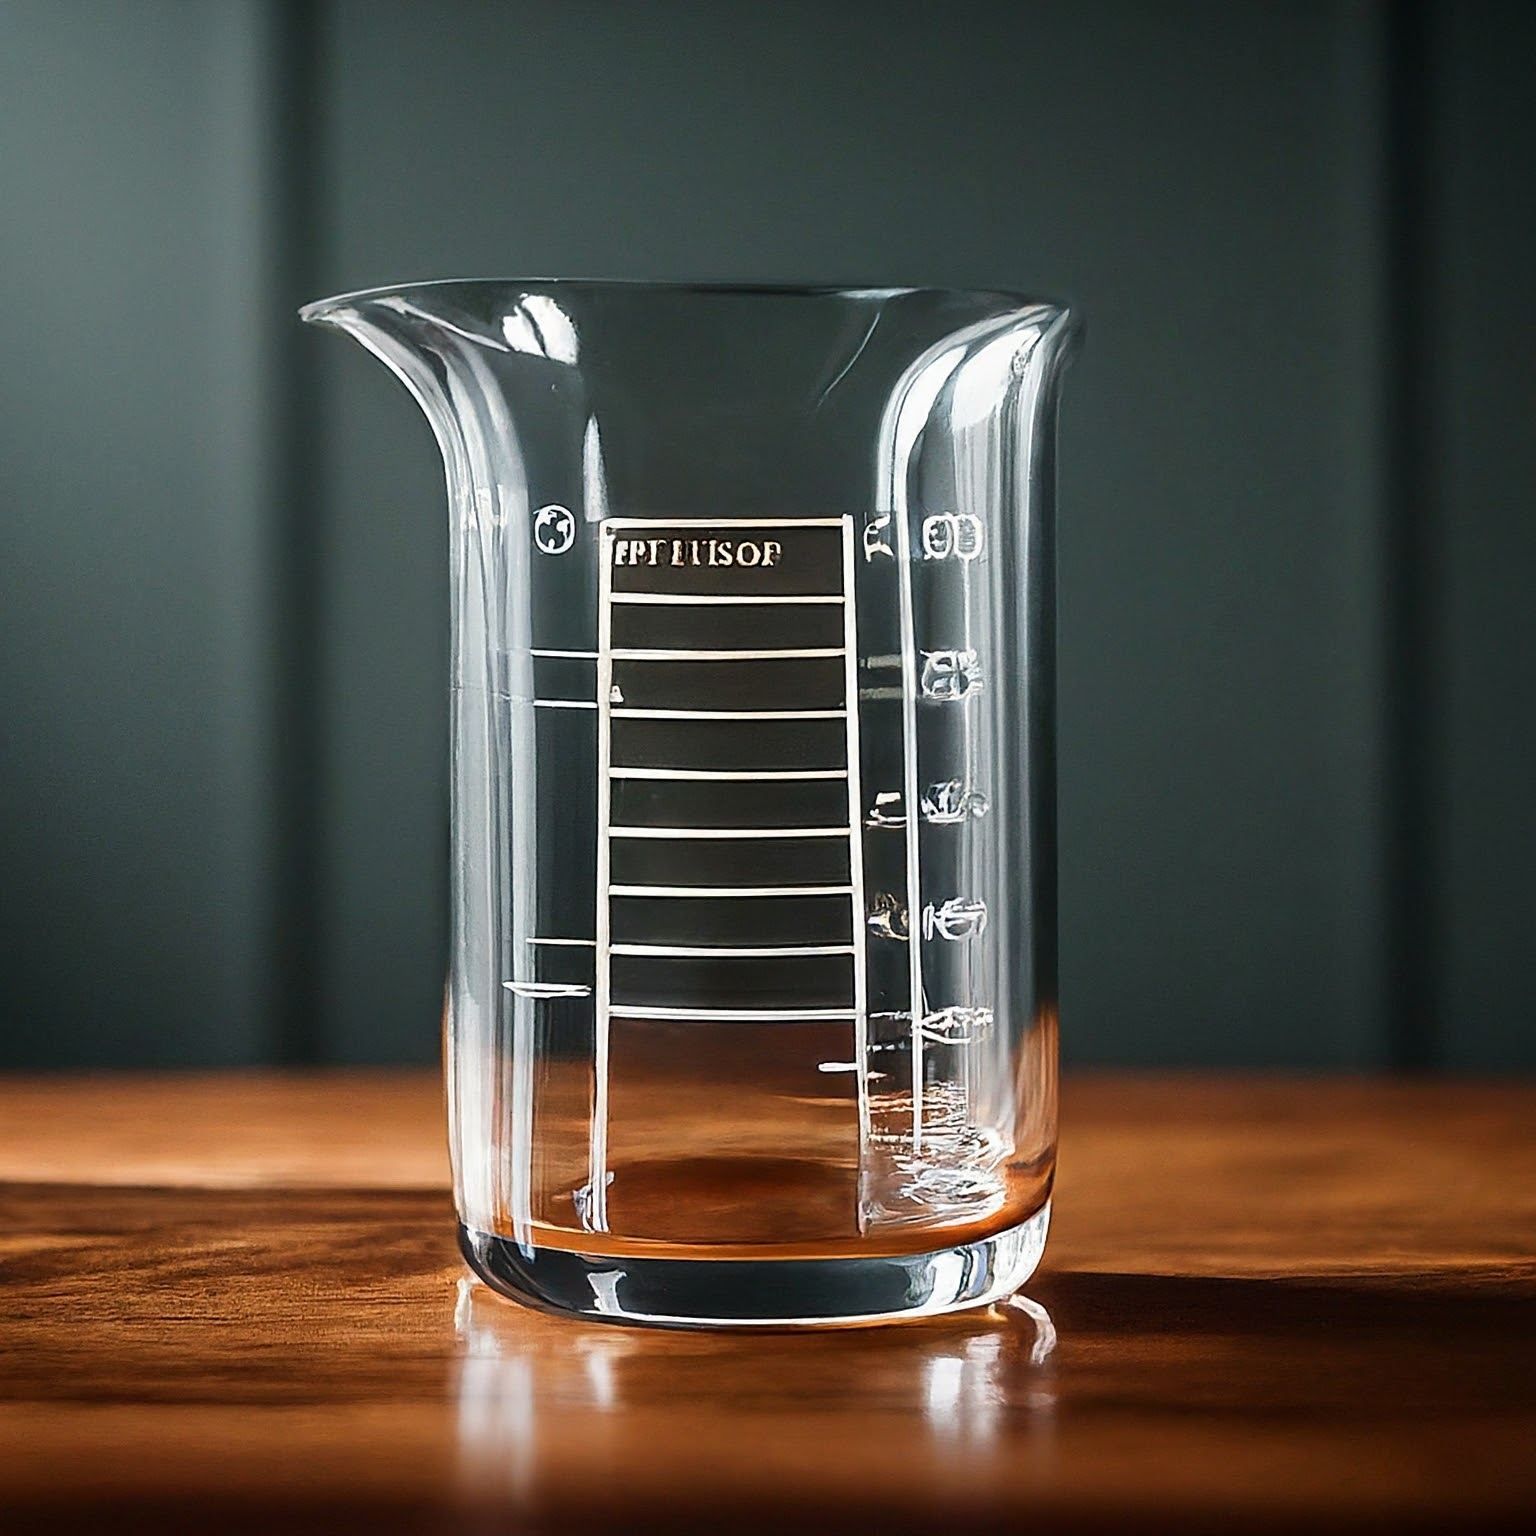 Borosilicate glassware in a laboratory setting